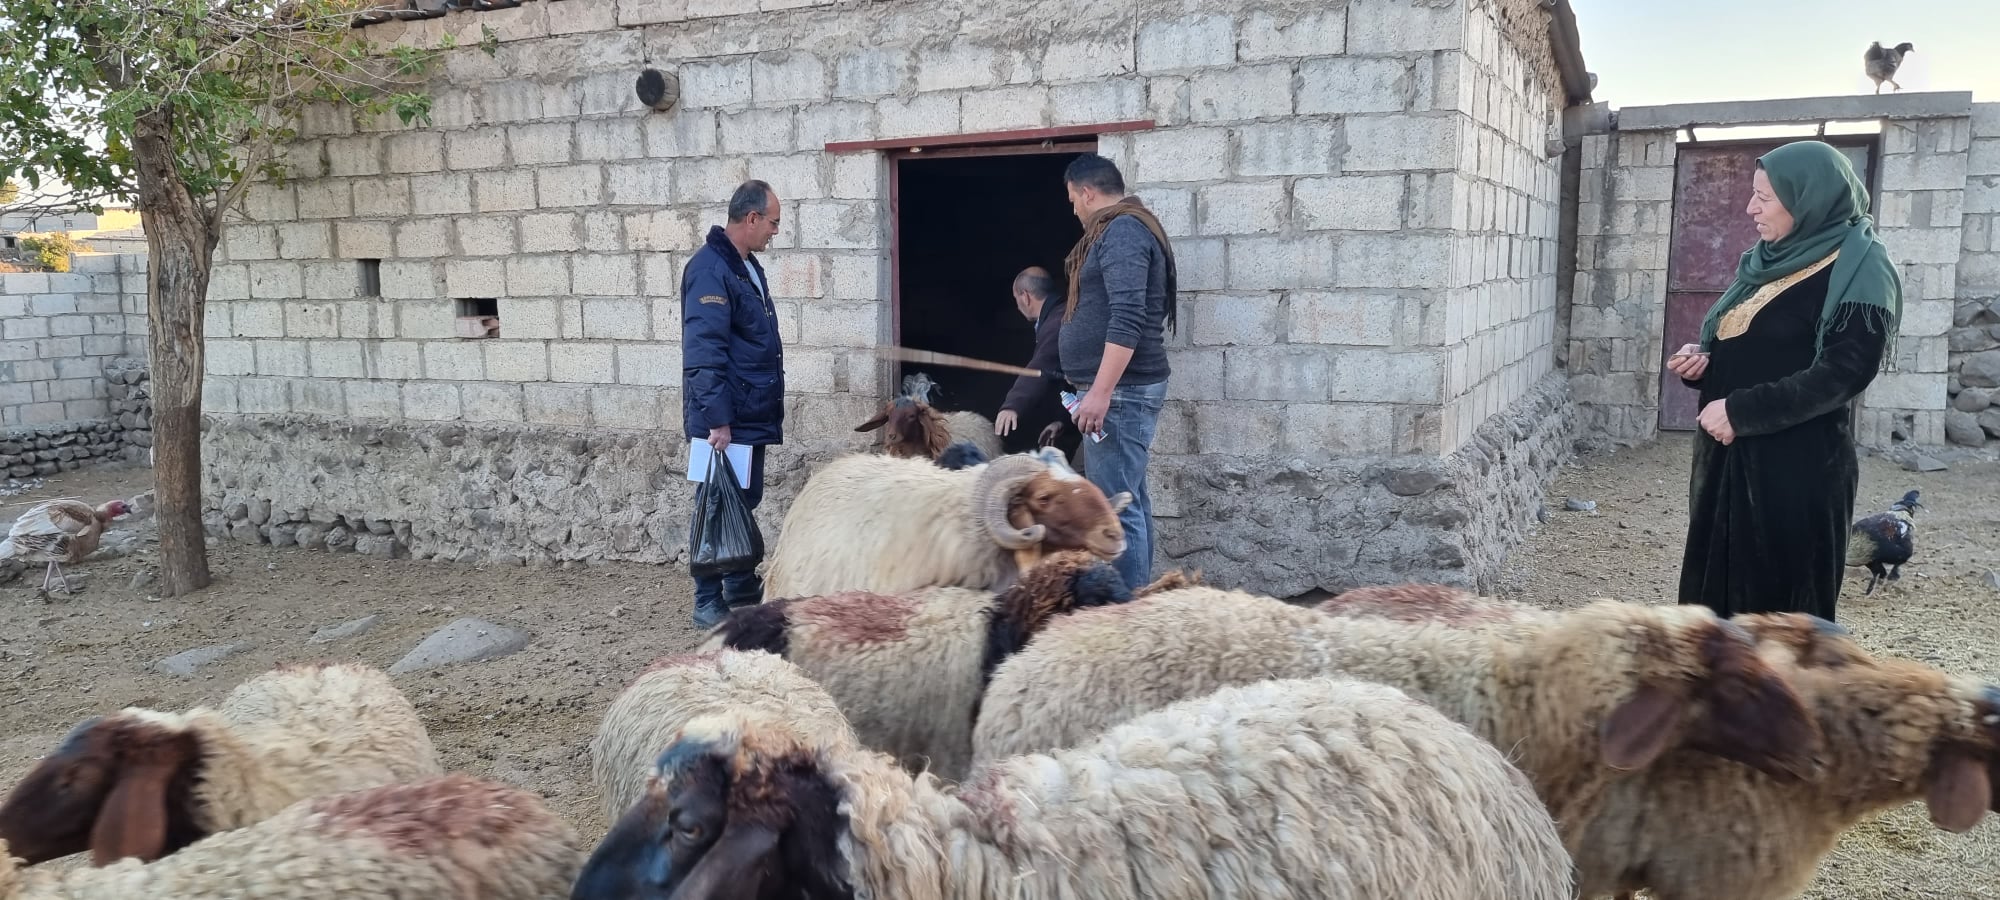 مديرية الثروة الحيوانية: إحصاء نحو 750 ألف رأس غنم في قامشلو وريفها حتى الآن